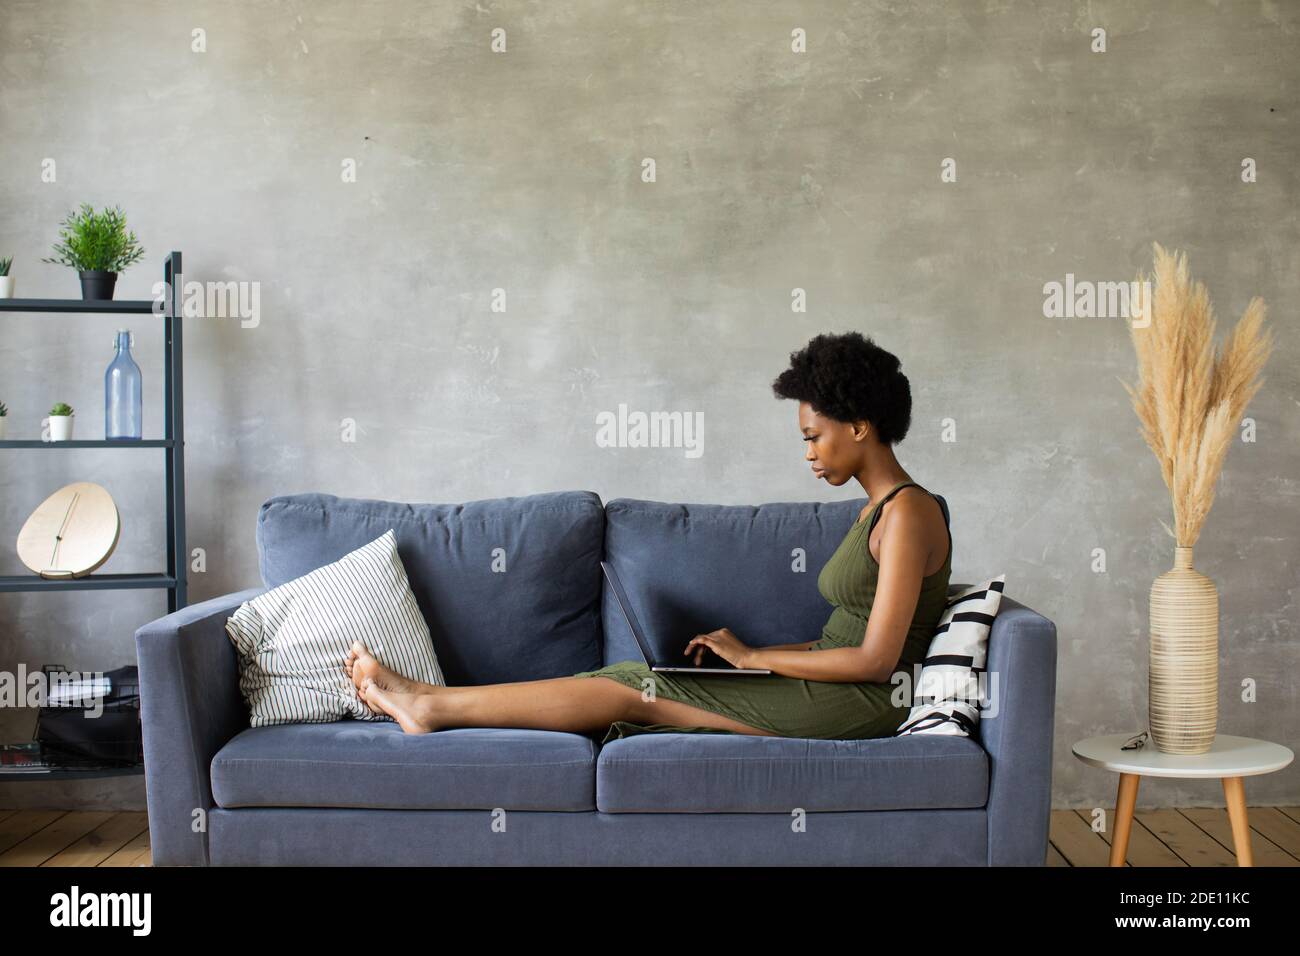 Felice african American giovane donna sedersi rilassarsi su un divano accogliente e lavorare su un computer portatile. Felice di trasferirsi in un nuovo appartamento Foto Stock